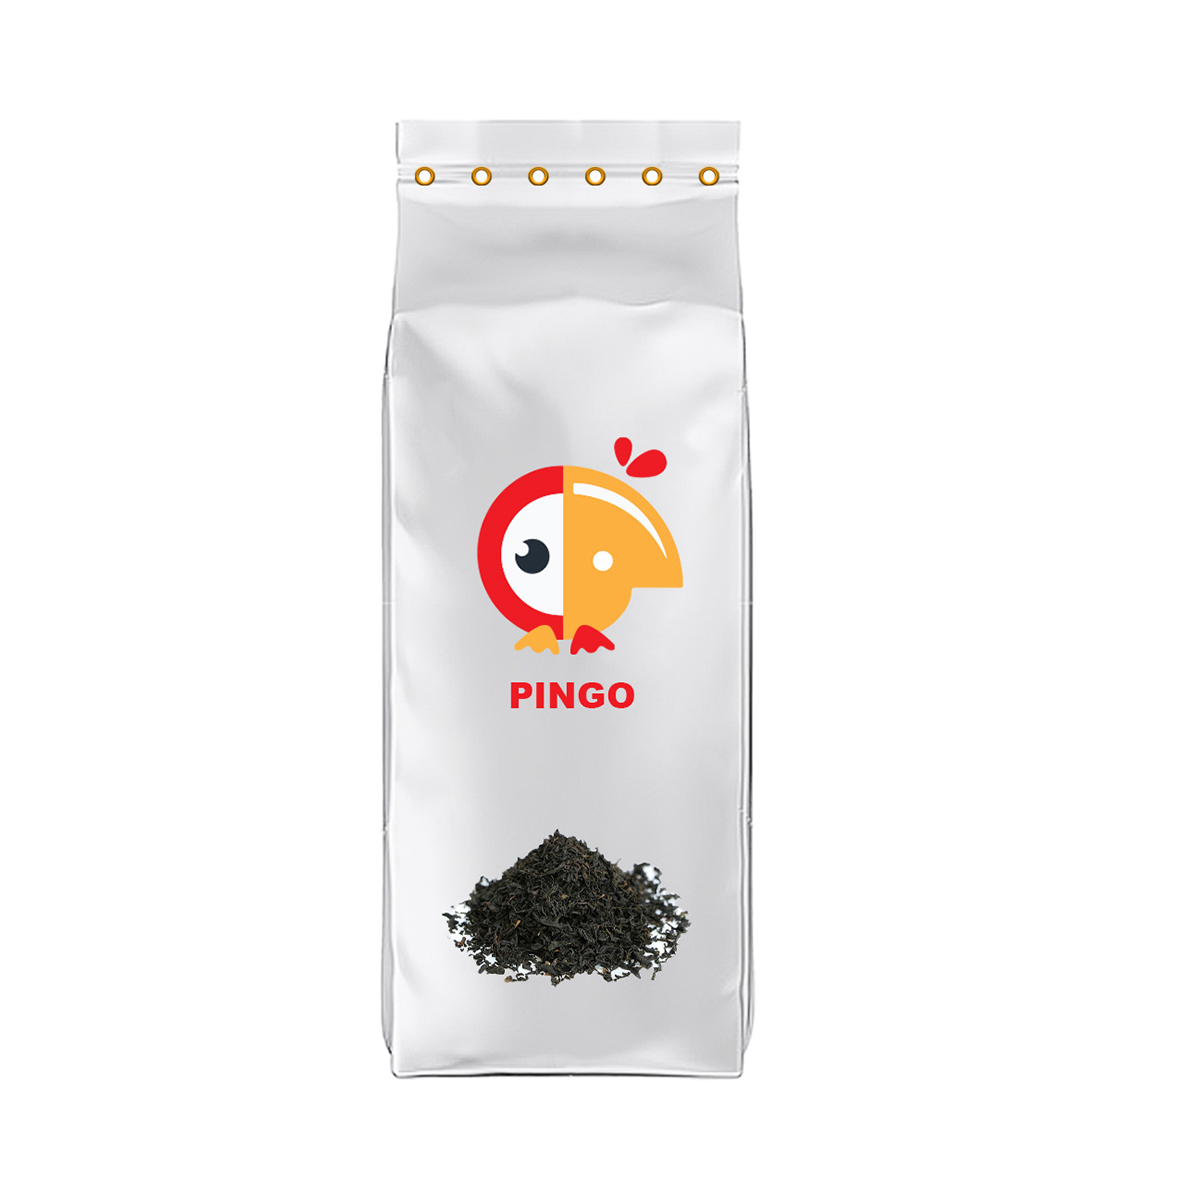 چای نیم ریز سیلان پینگو - 1.5 کیلوگرم